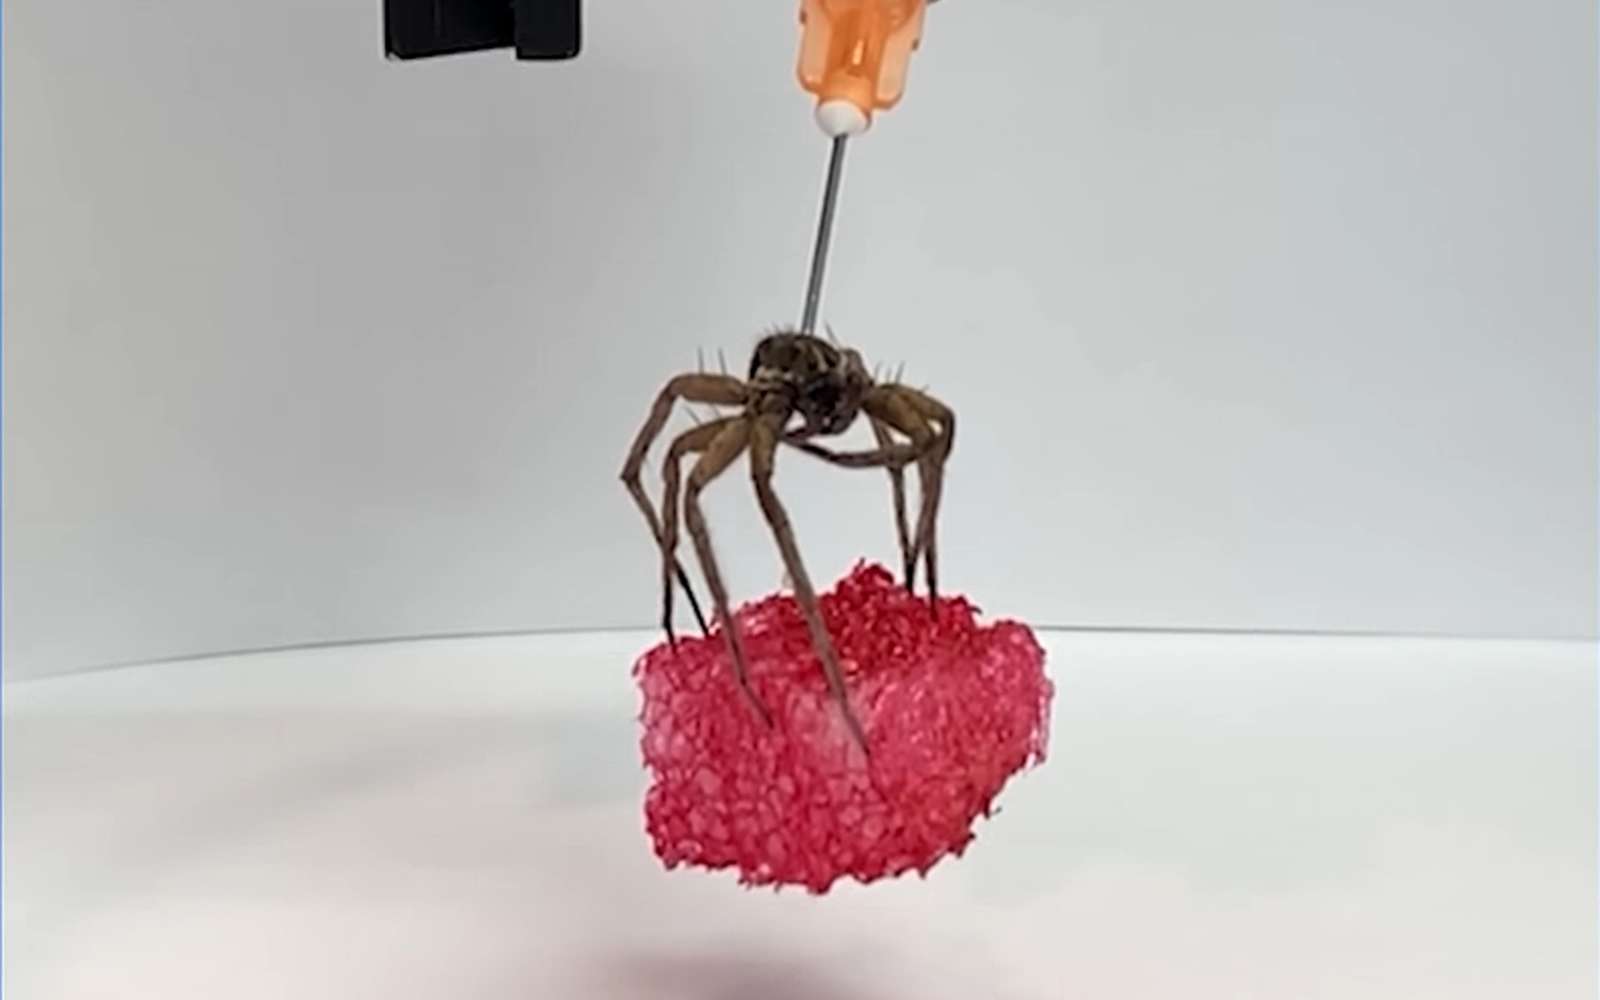 La nécrobotique, ou l'art cauchemardesque de transformer les araignées mortes en robots